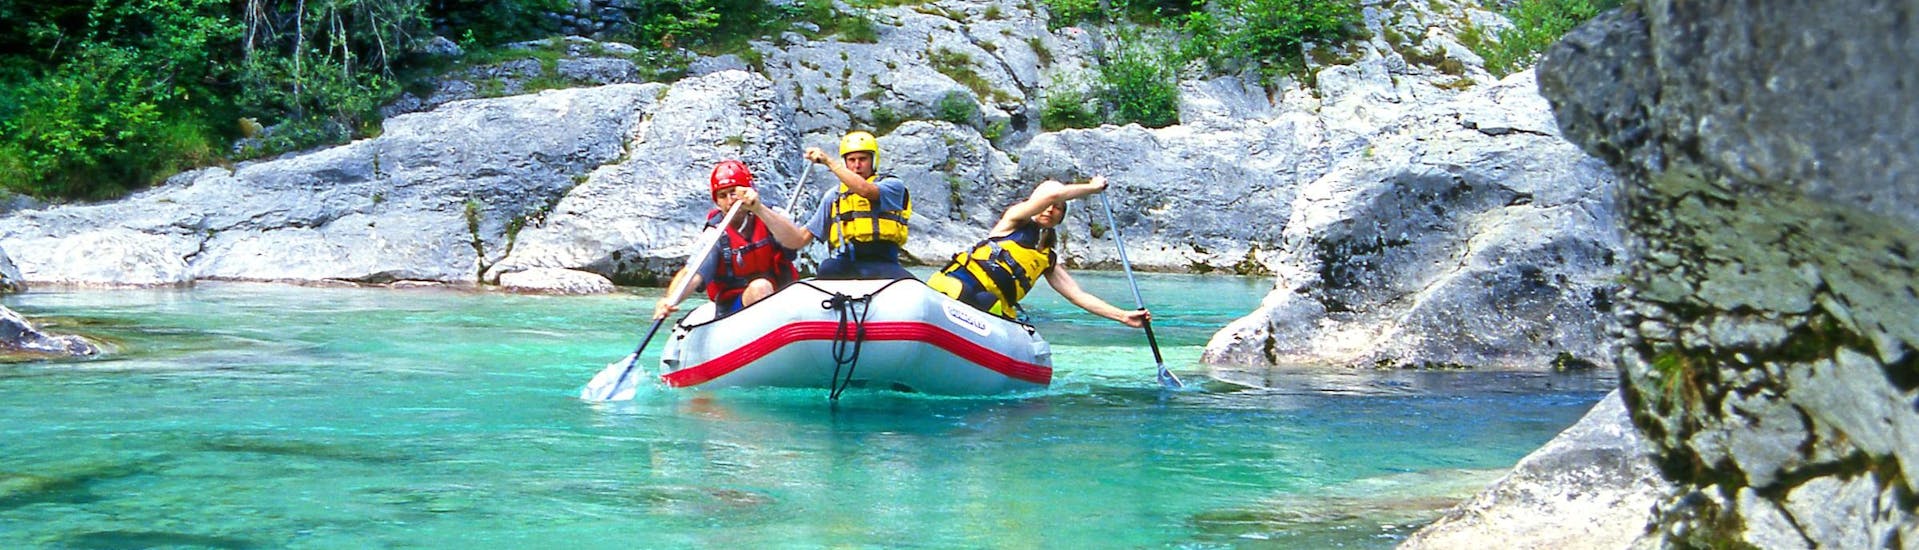 Un groupe de jeunes gens s'amuse lors d'une activité en eau vive dans la destination de rafting et canyoning Vallée de la Soča. 